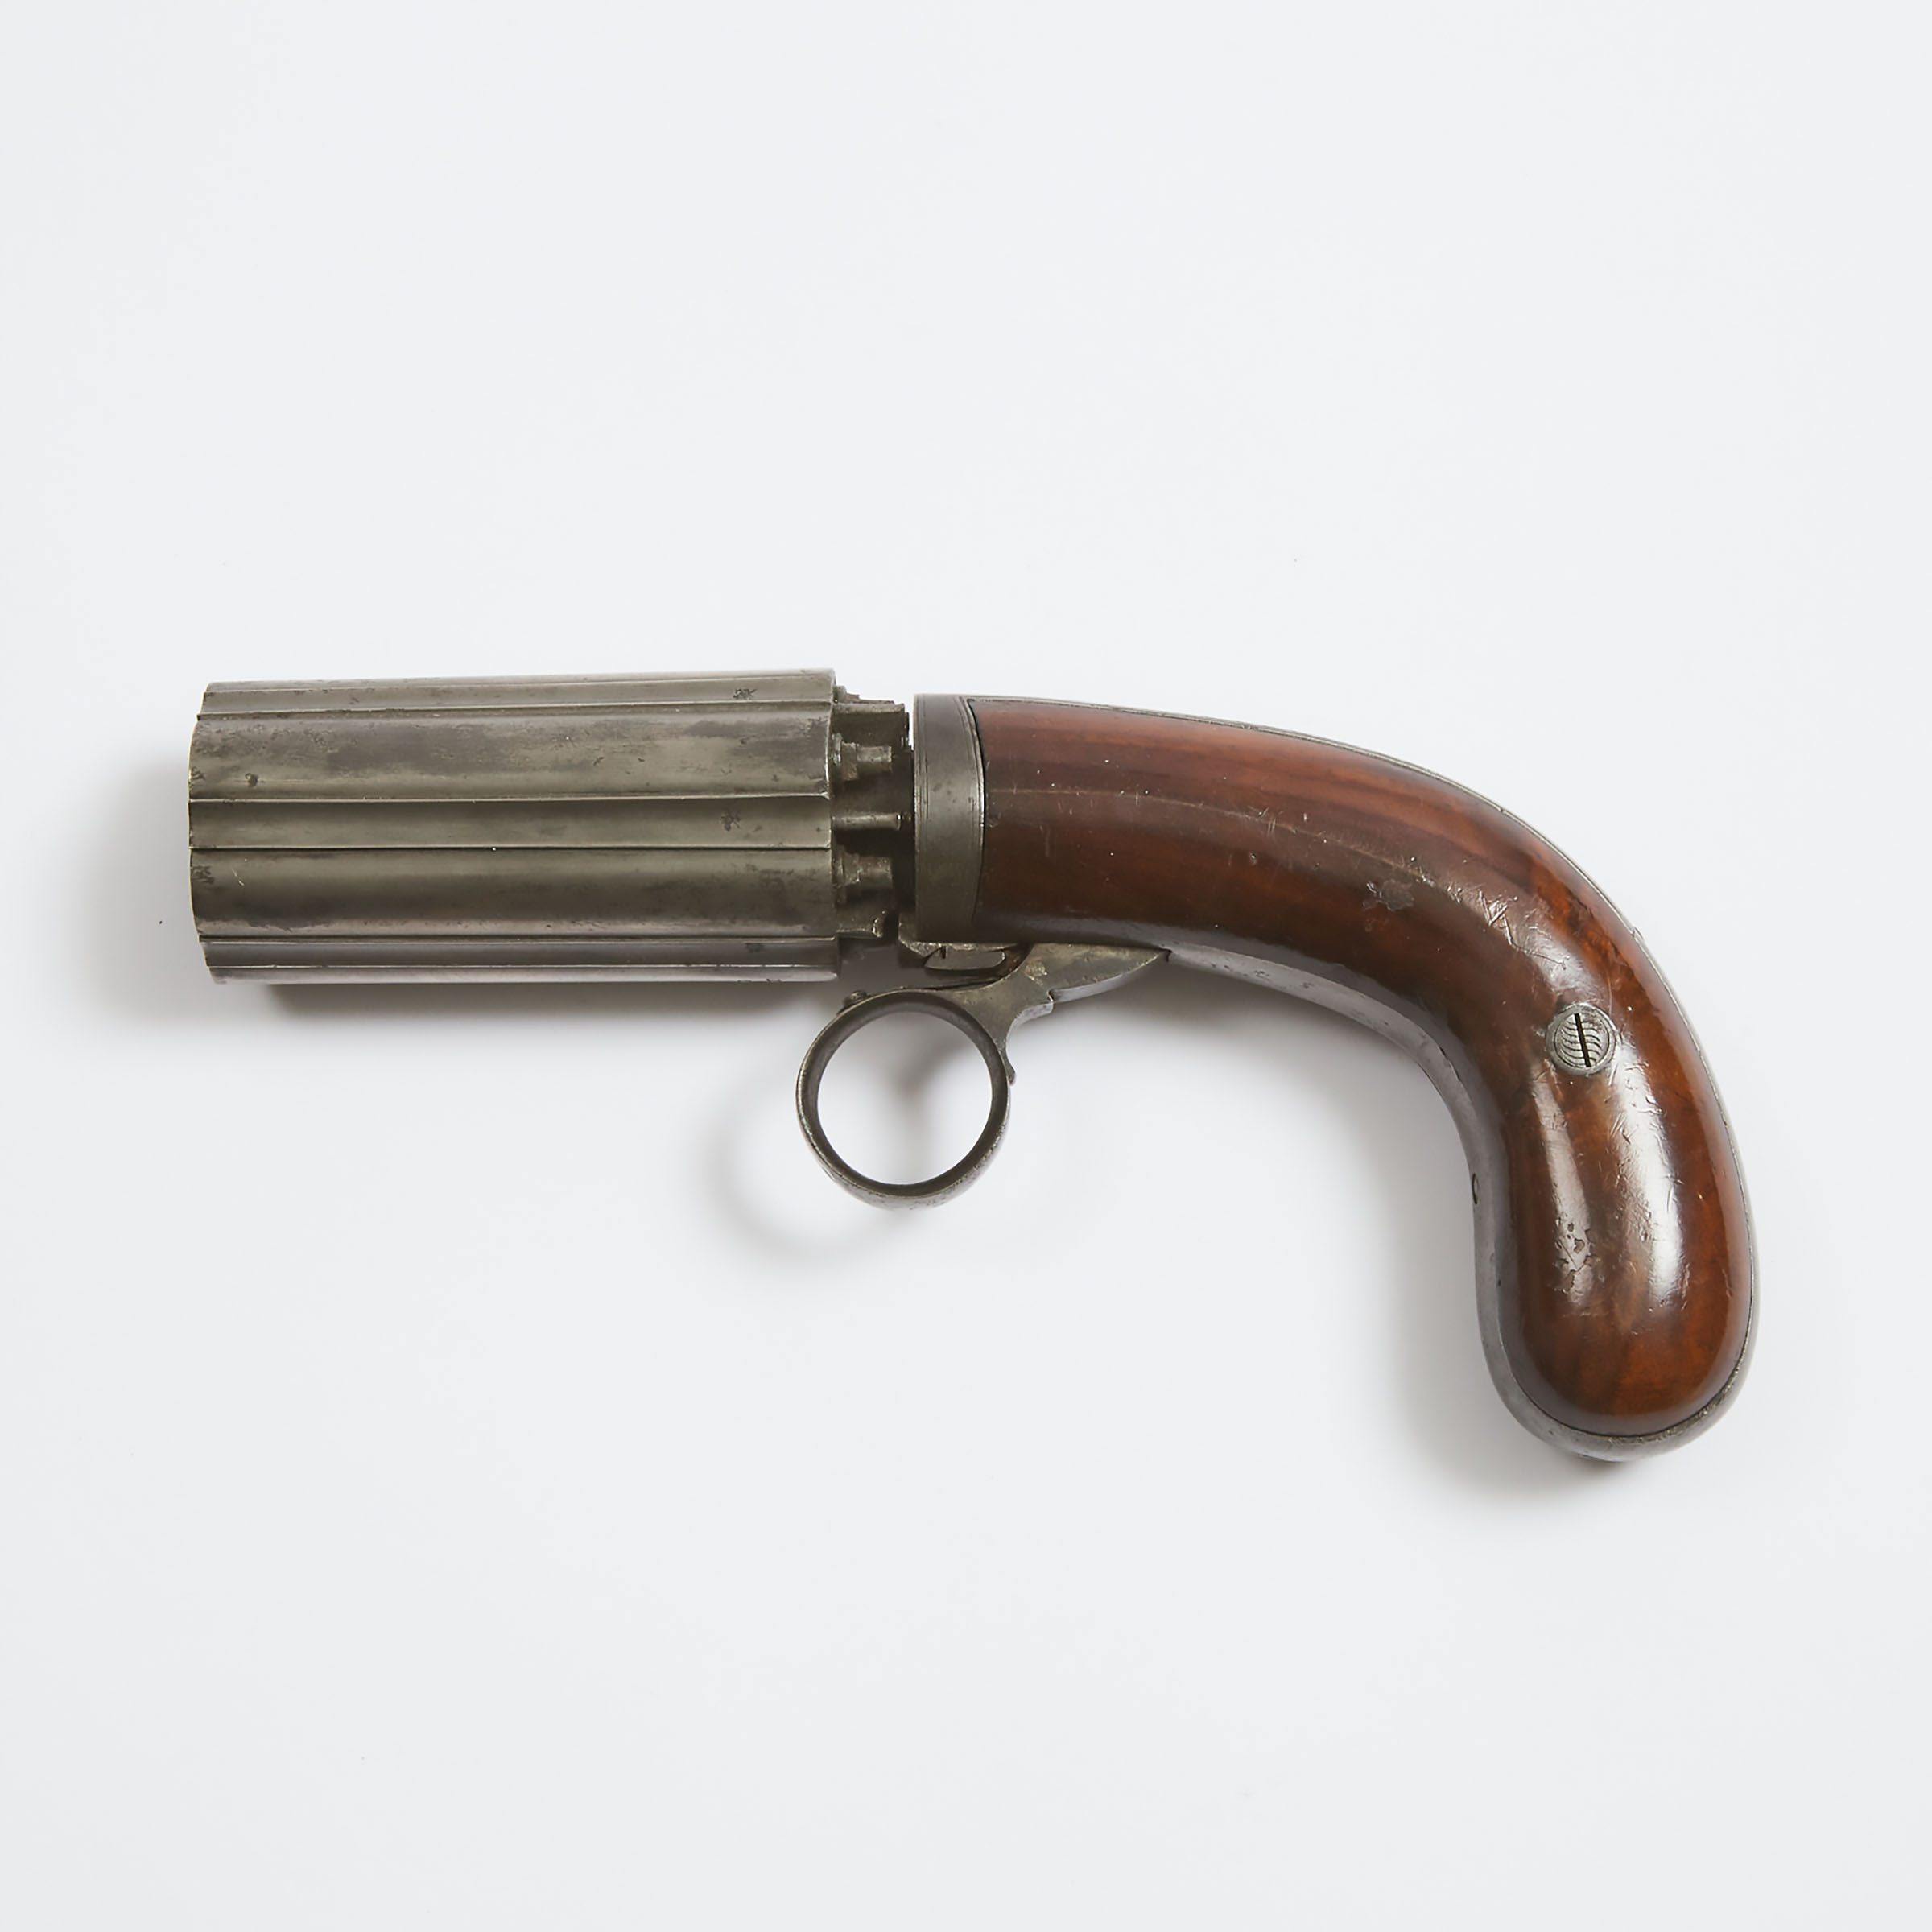 British Pepperbox Pistol, J.R. (Joseph Rock) Cooper, Patentee, Birmingham, c.1845